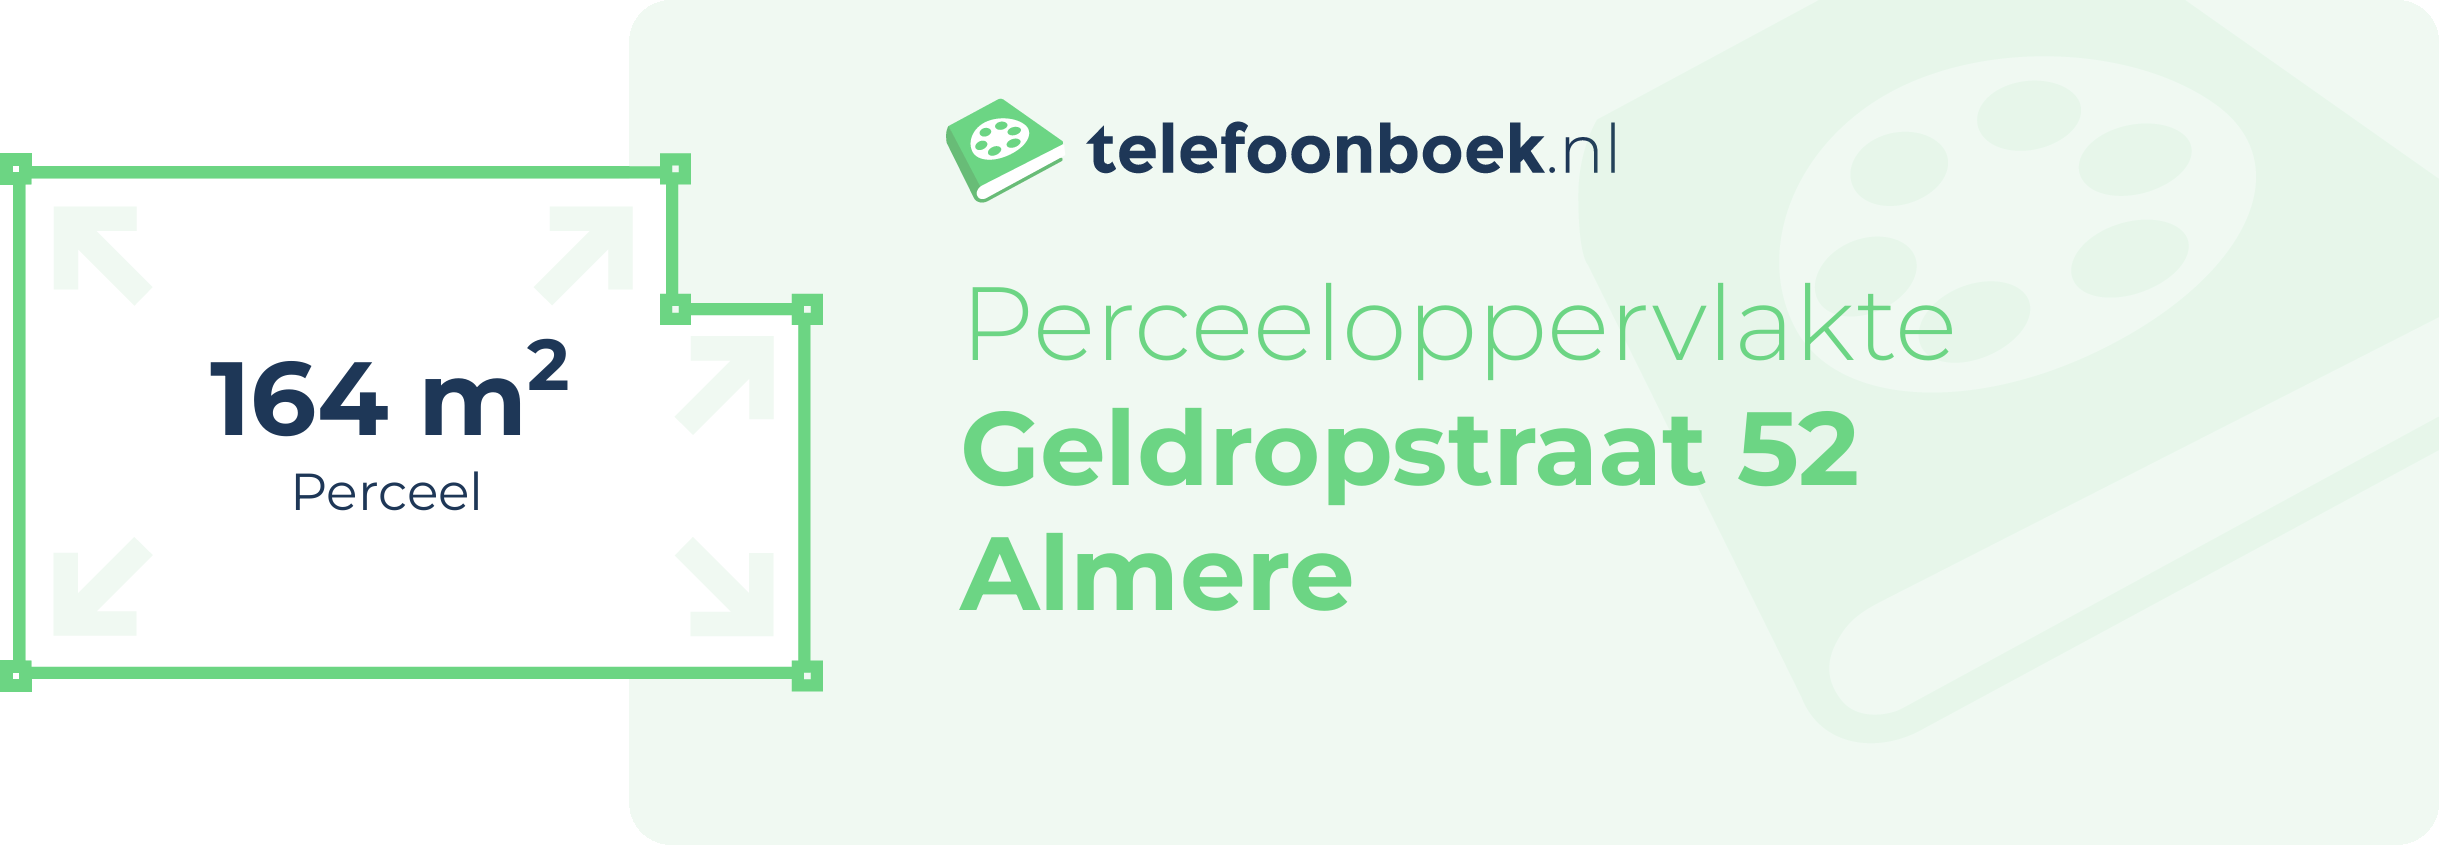 Perceeloppervlakte Geldropstraat 52 Almere